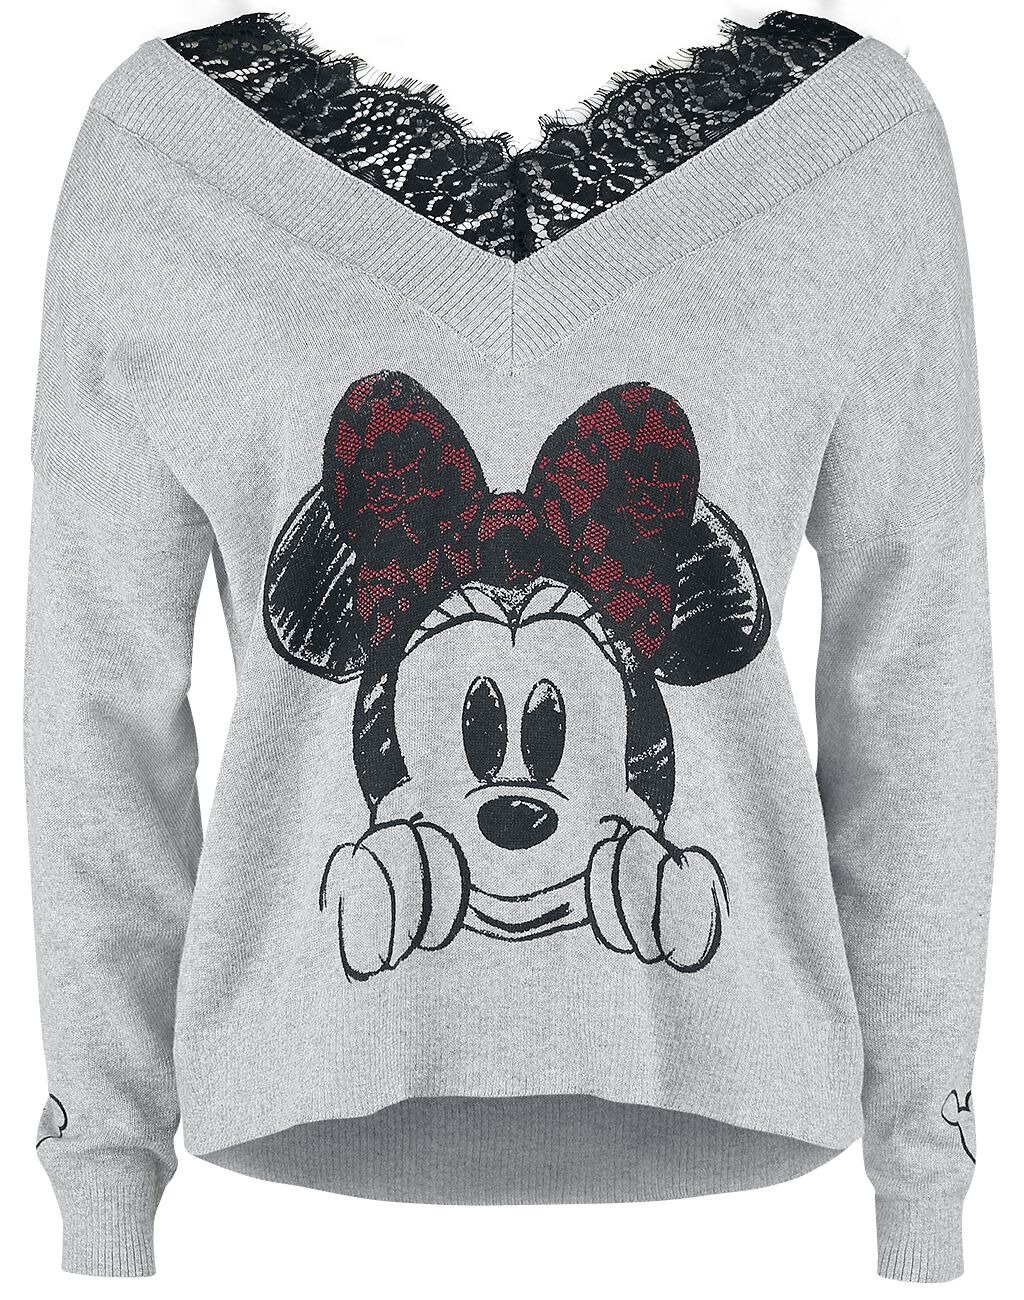 Mickey Mouse - Disney Sweatshirt - Minnie Maus - S bis XL - für Damen - Größe S - grau meliert  - EMP exklusives Merchandise!